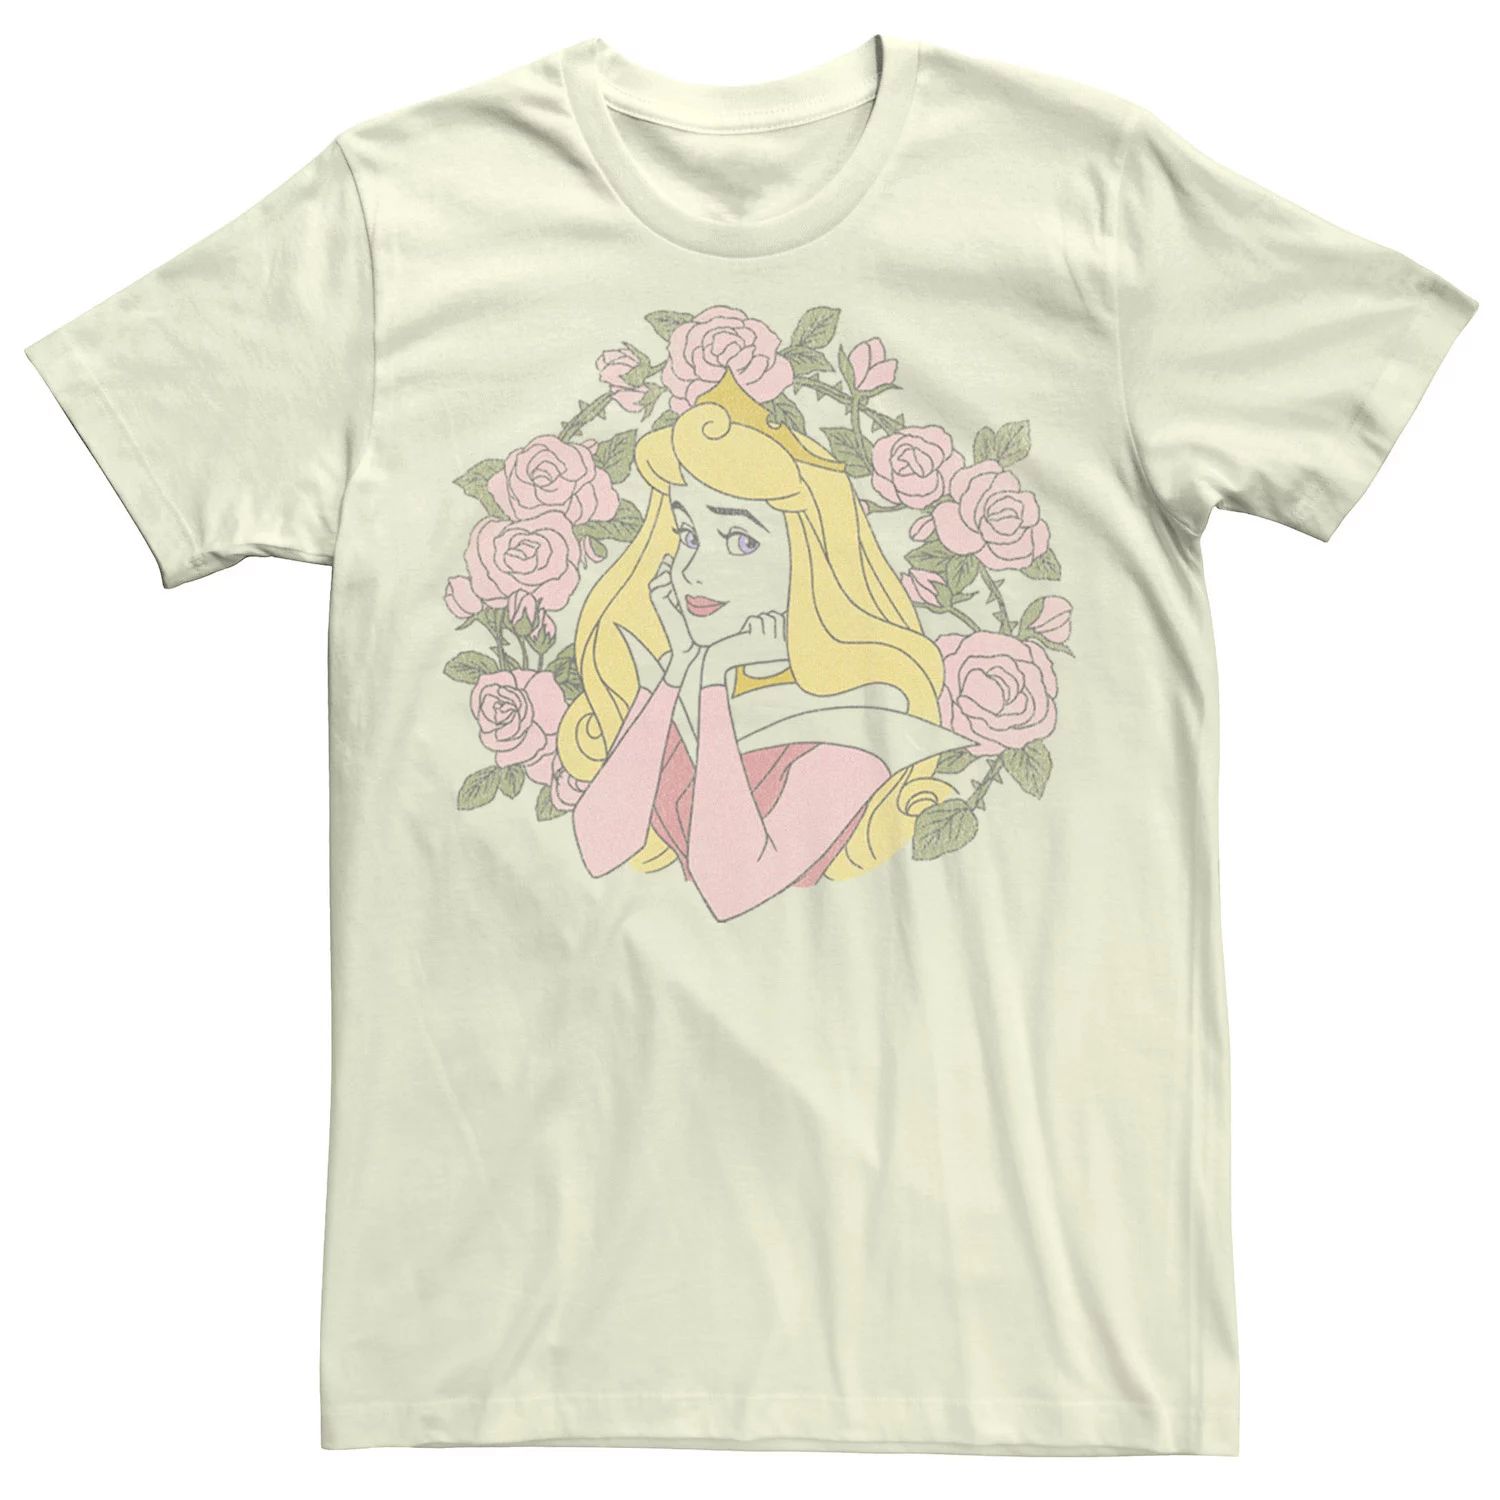 антигуа 1980 дисней спящая красавица Мужская футболка Disney Sleeping Beauty Aurora Rose Thorn Portrait Licensed Character